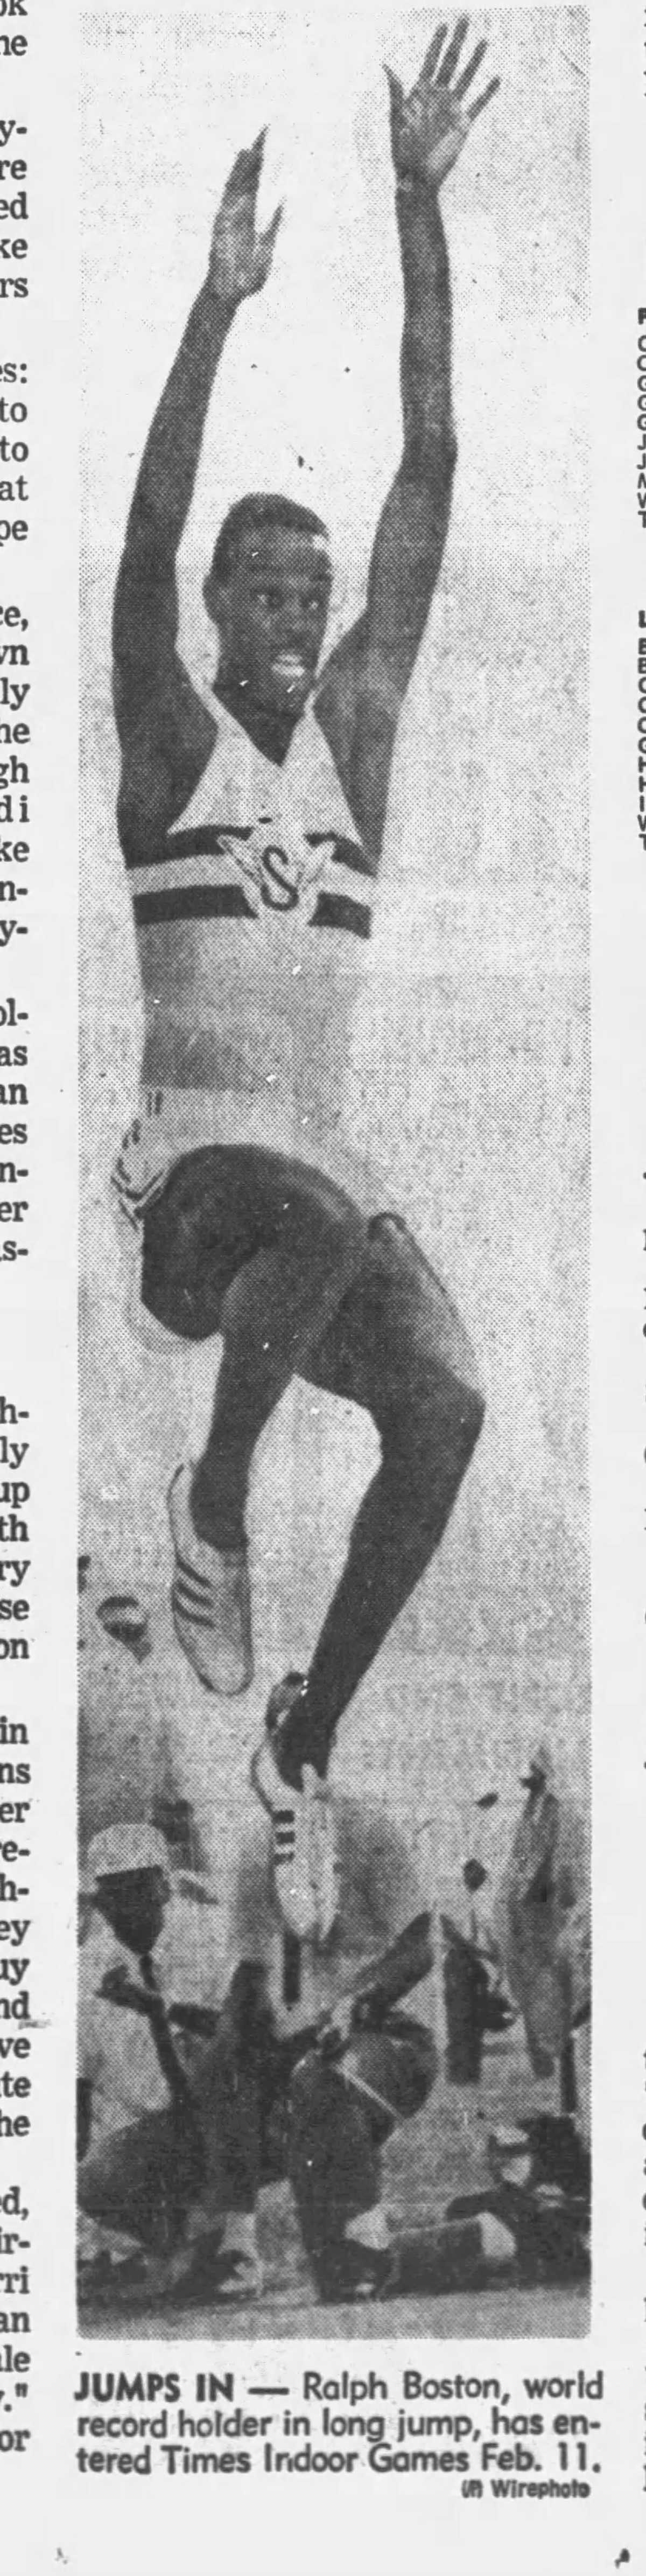 A newspaper photograph of a man half way through a high jump